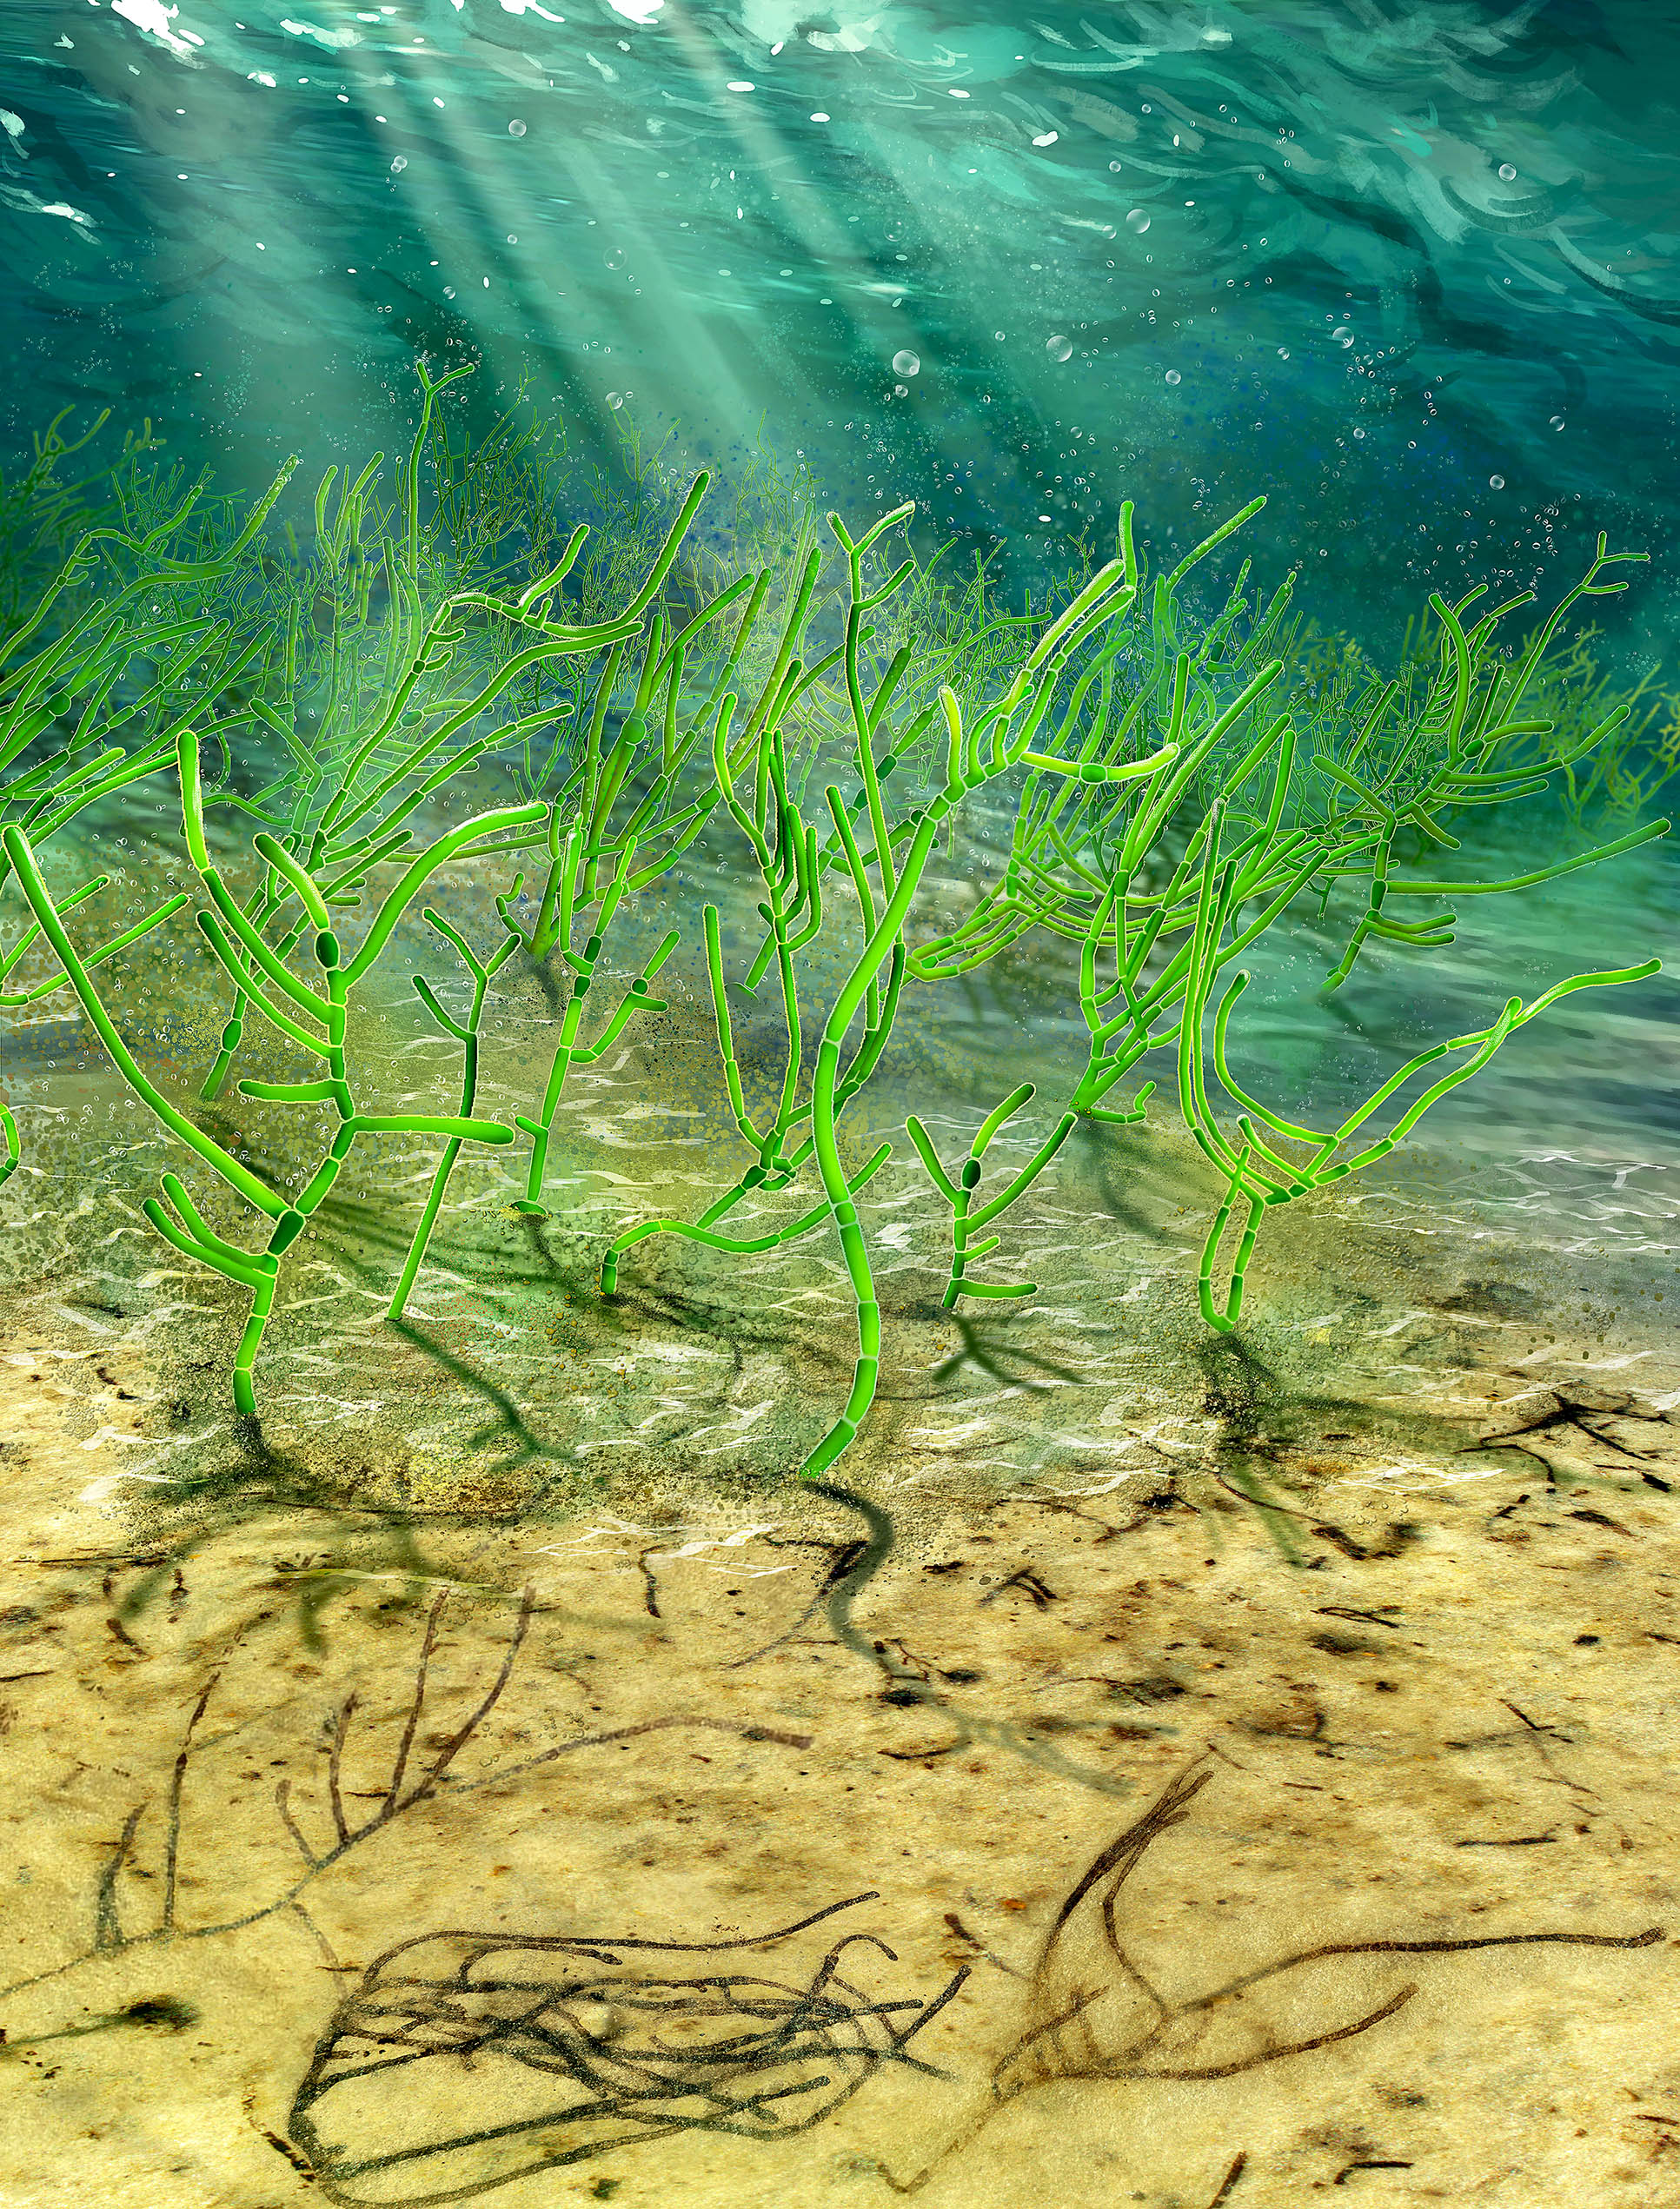 Microscopic green seaweed